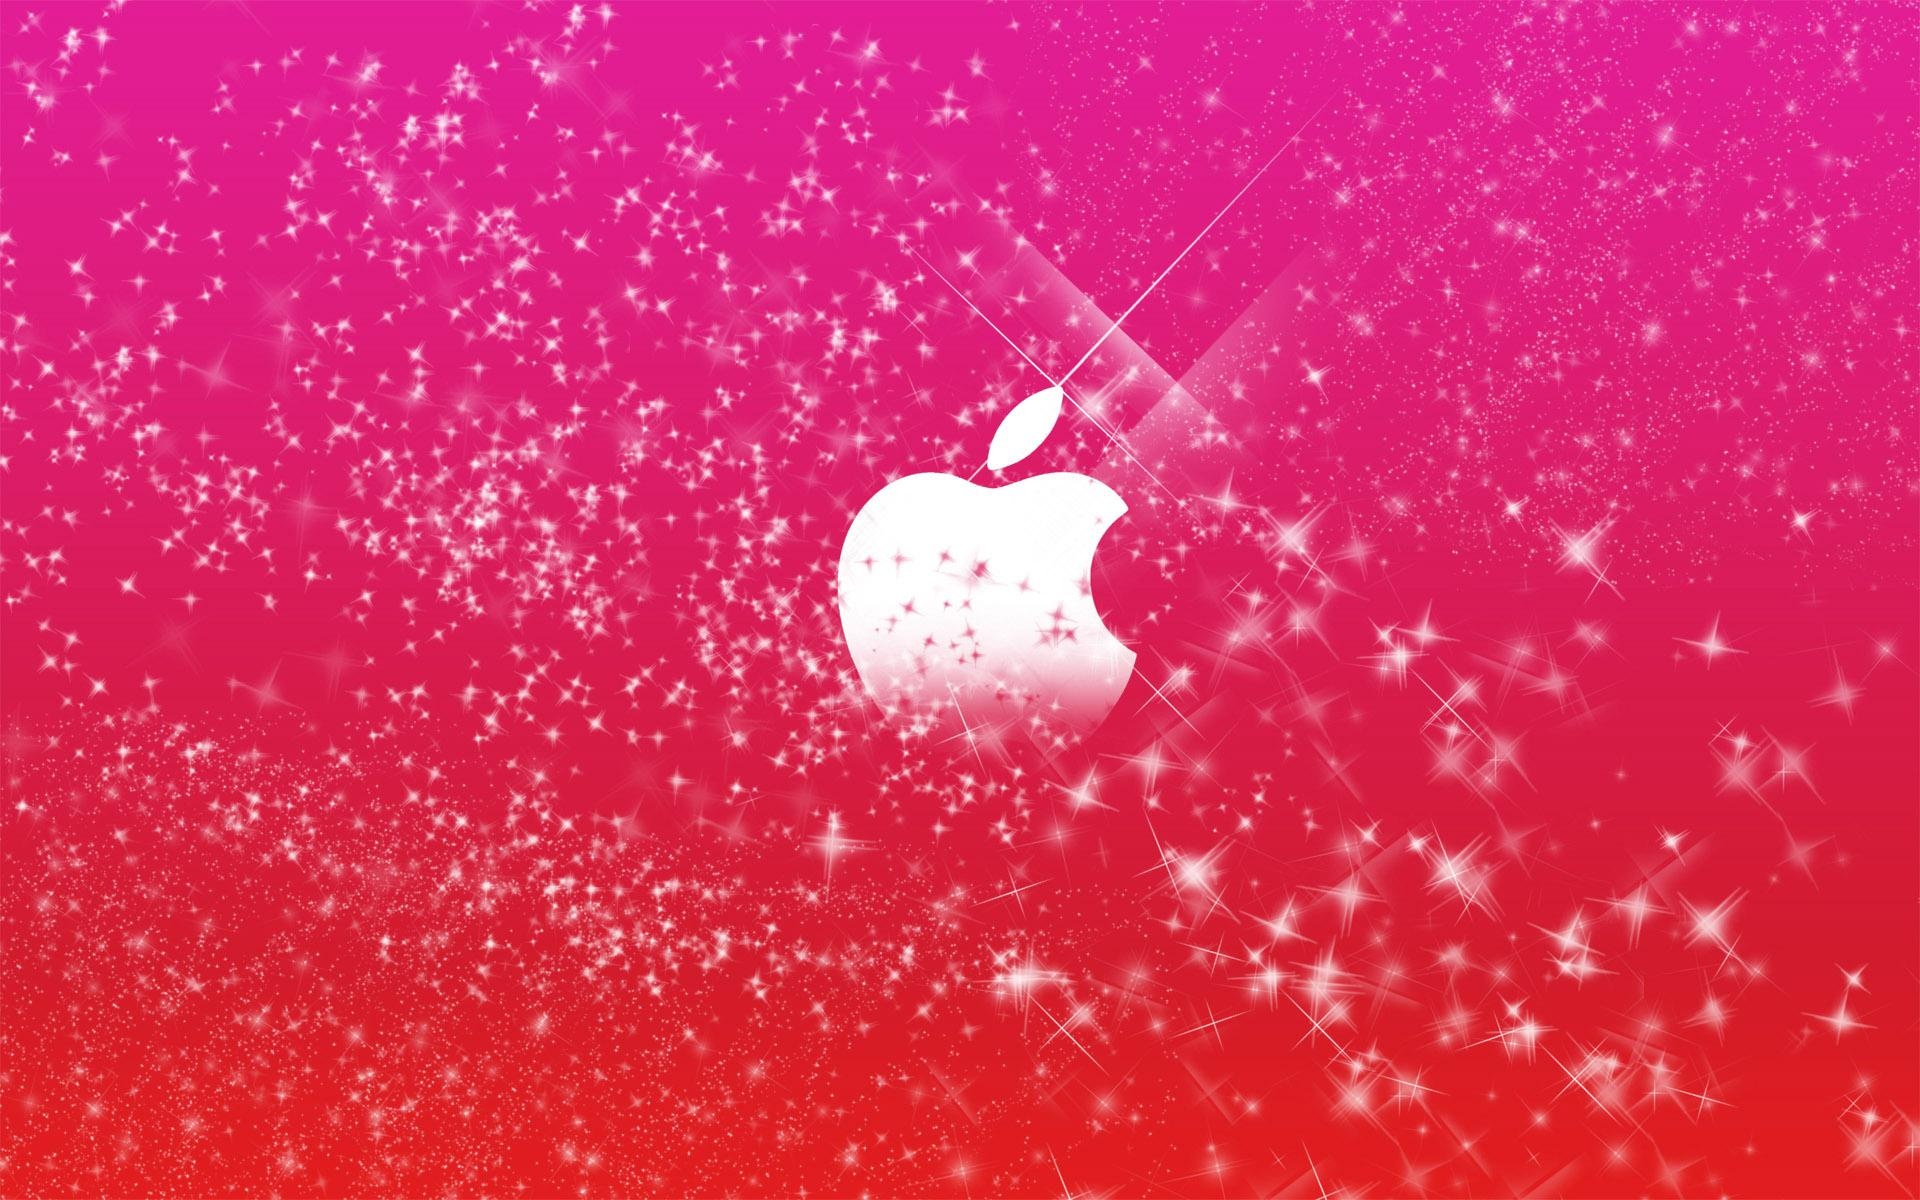 苹果商标在粉红色的闪光壁纸1600x900分辨率查看